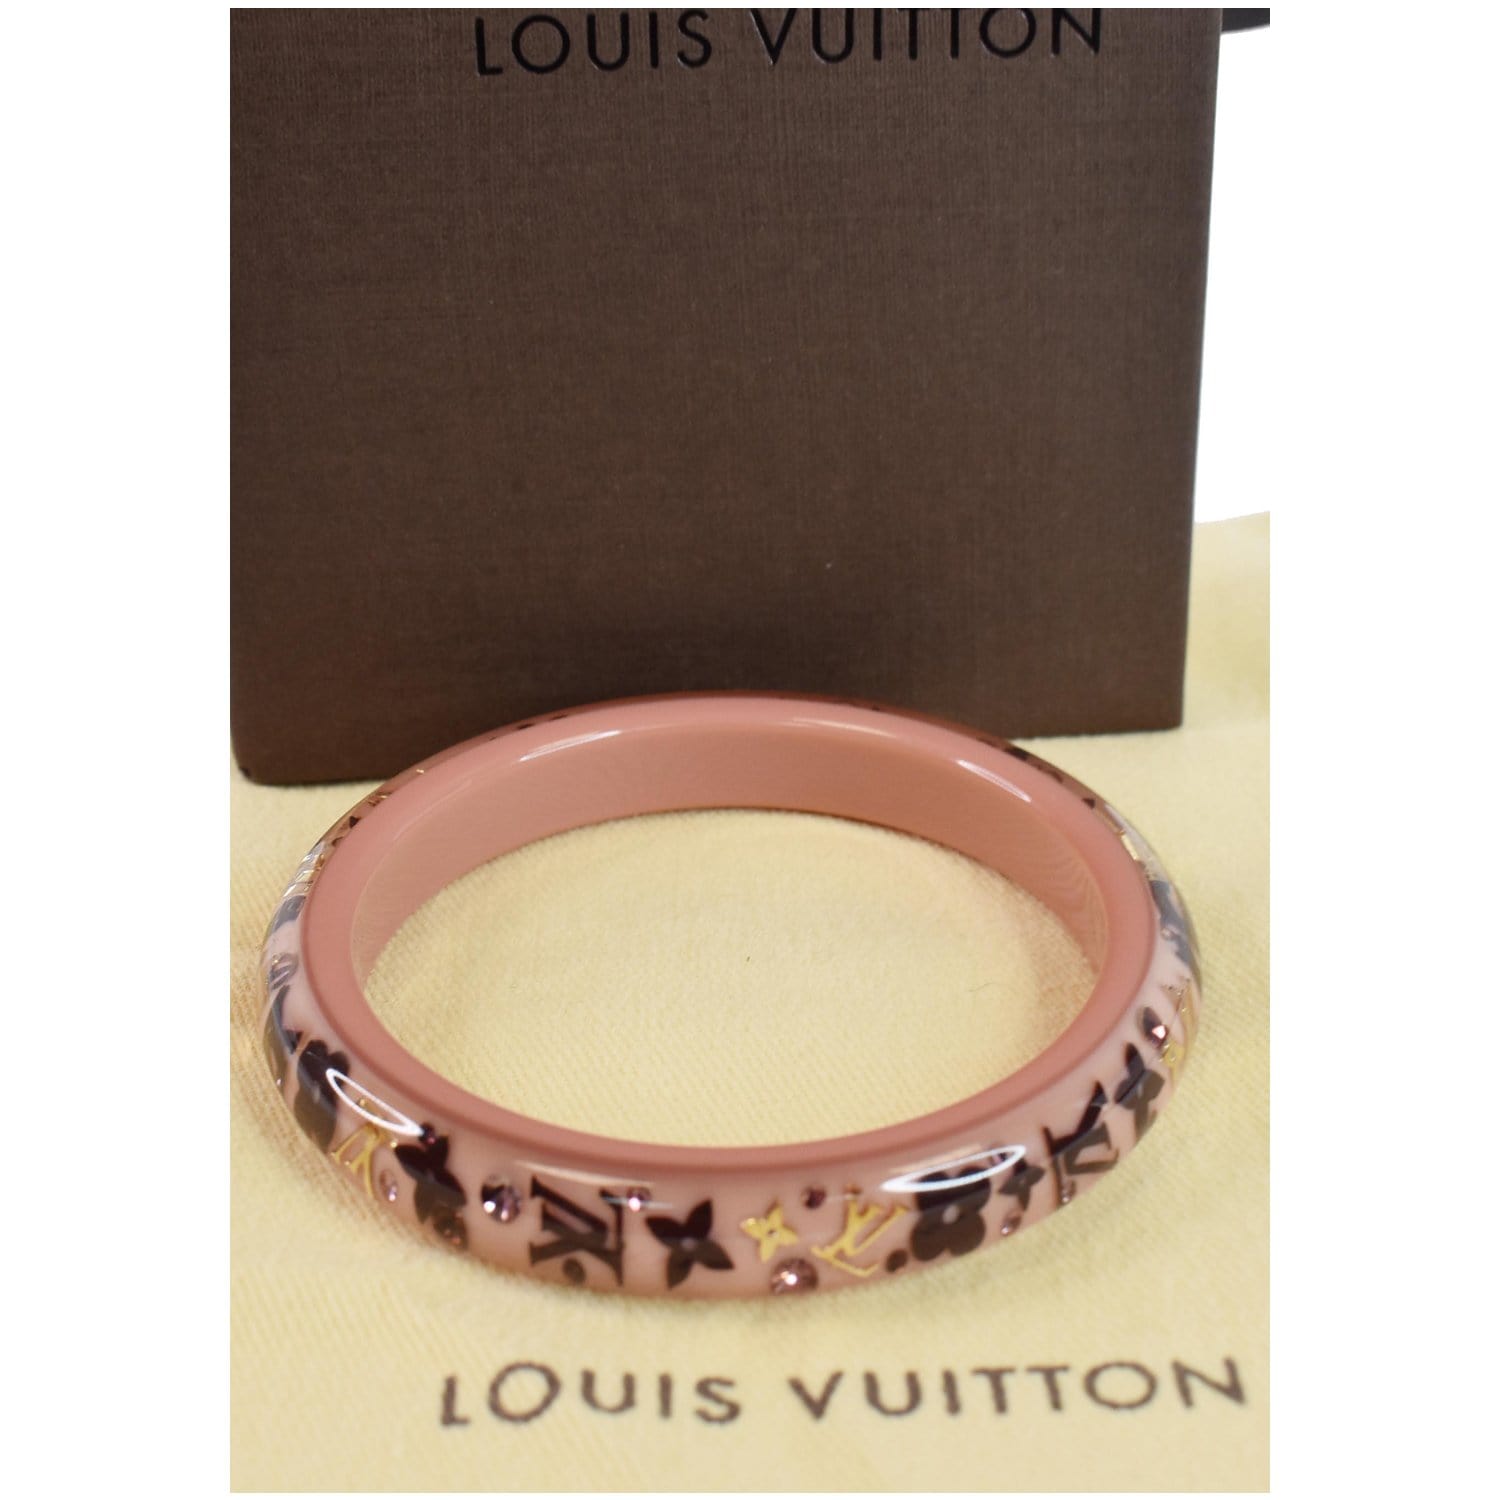 Louis Vuitton, Jewelry, Louis Vuitton Inclusion Bracelet